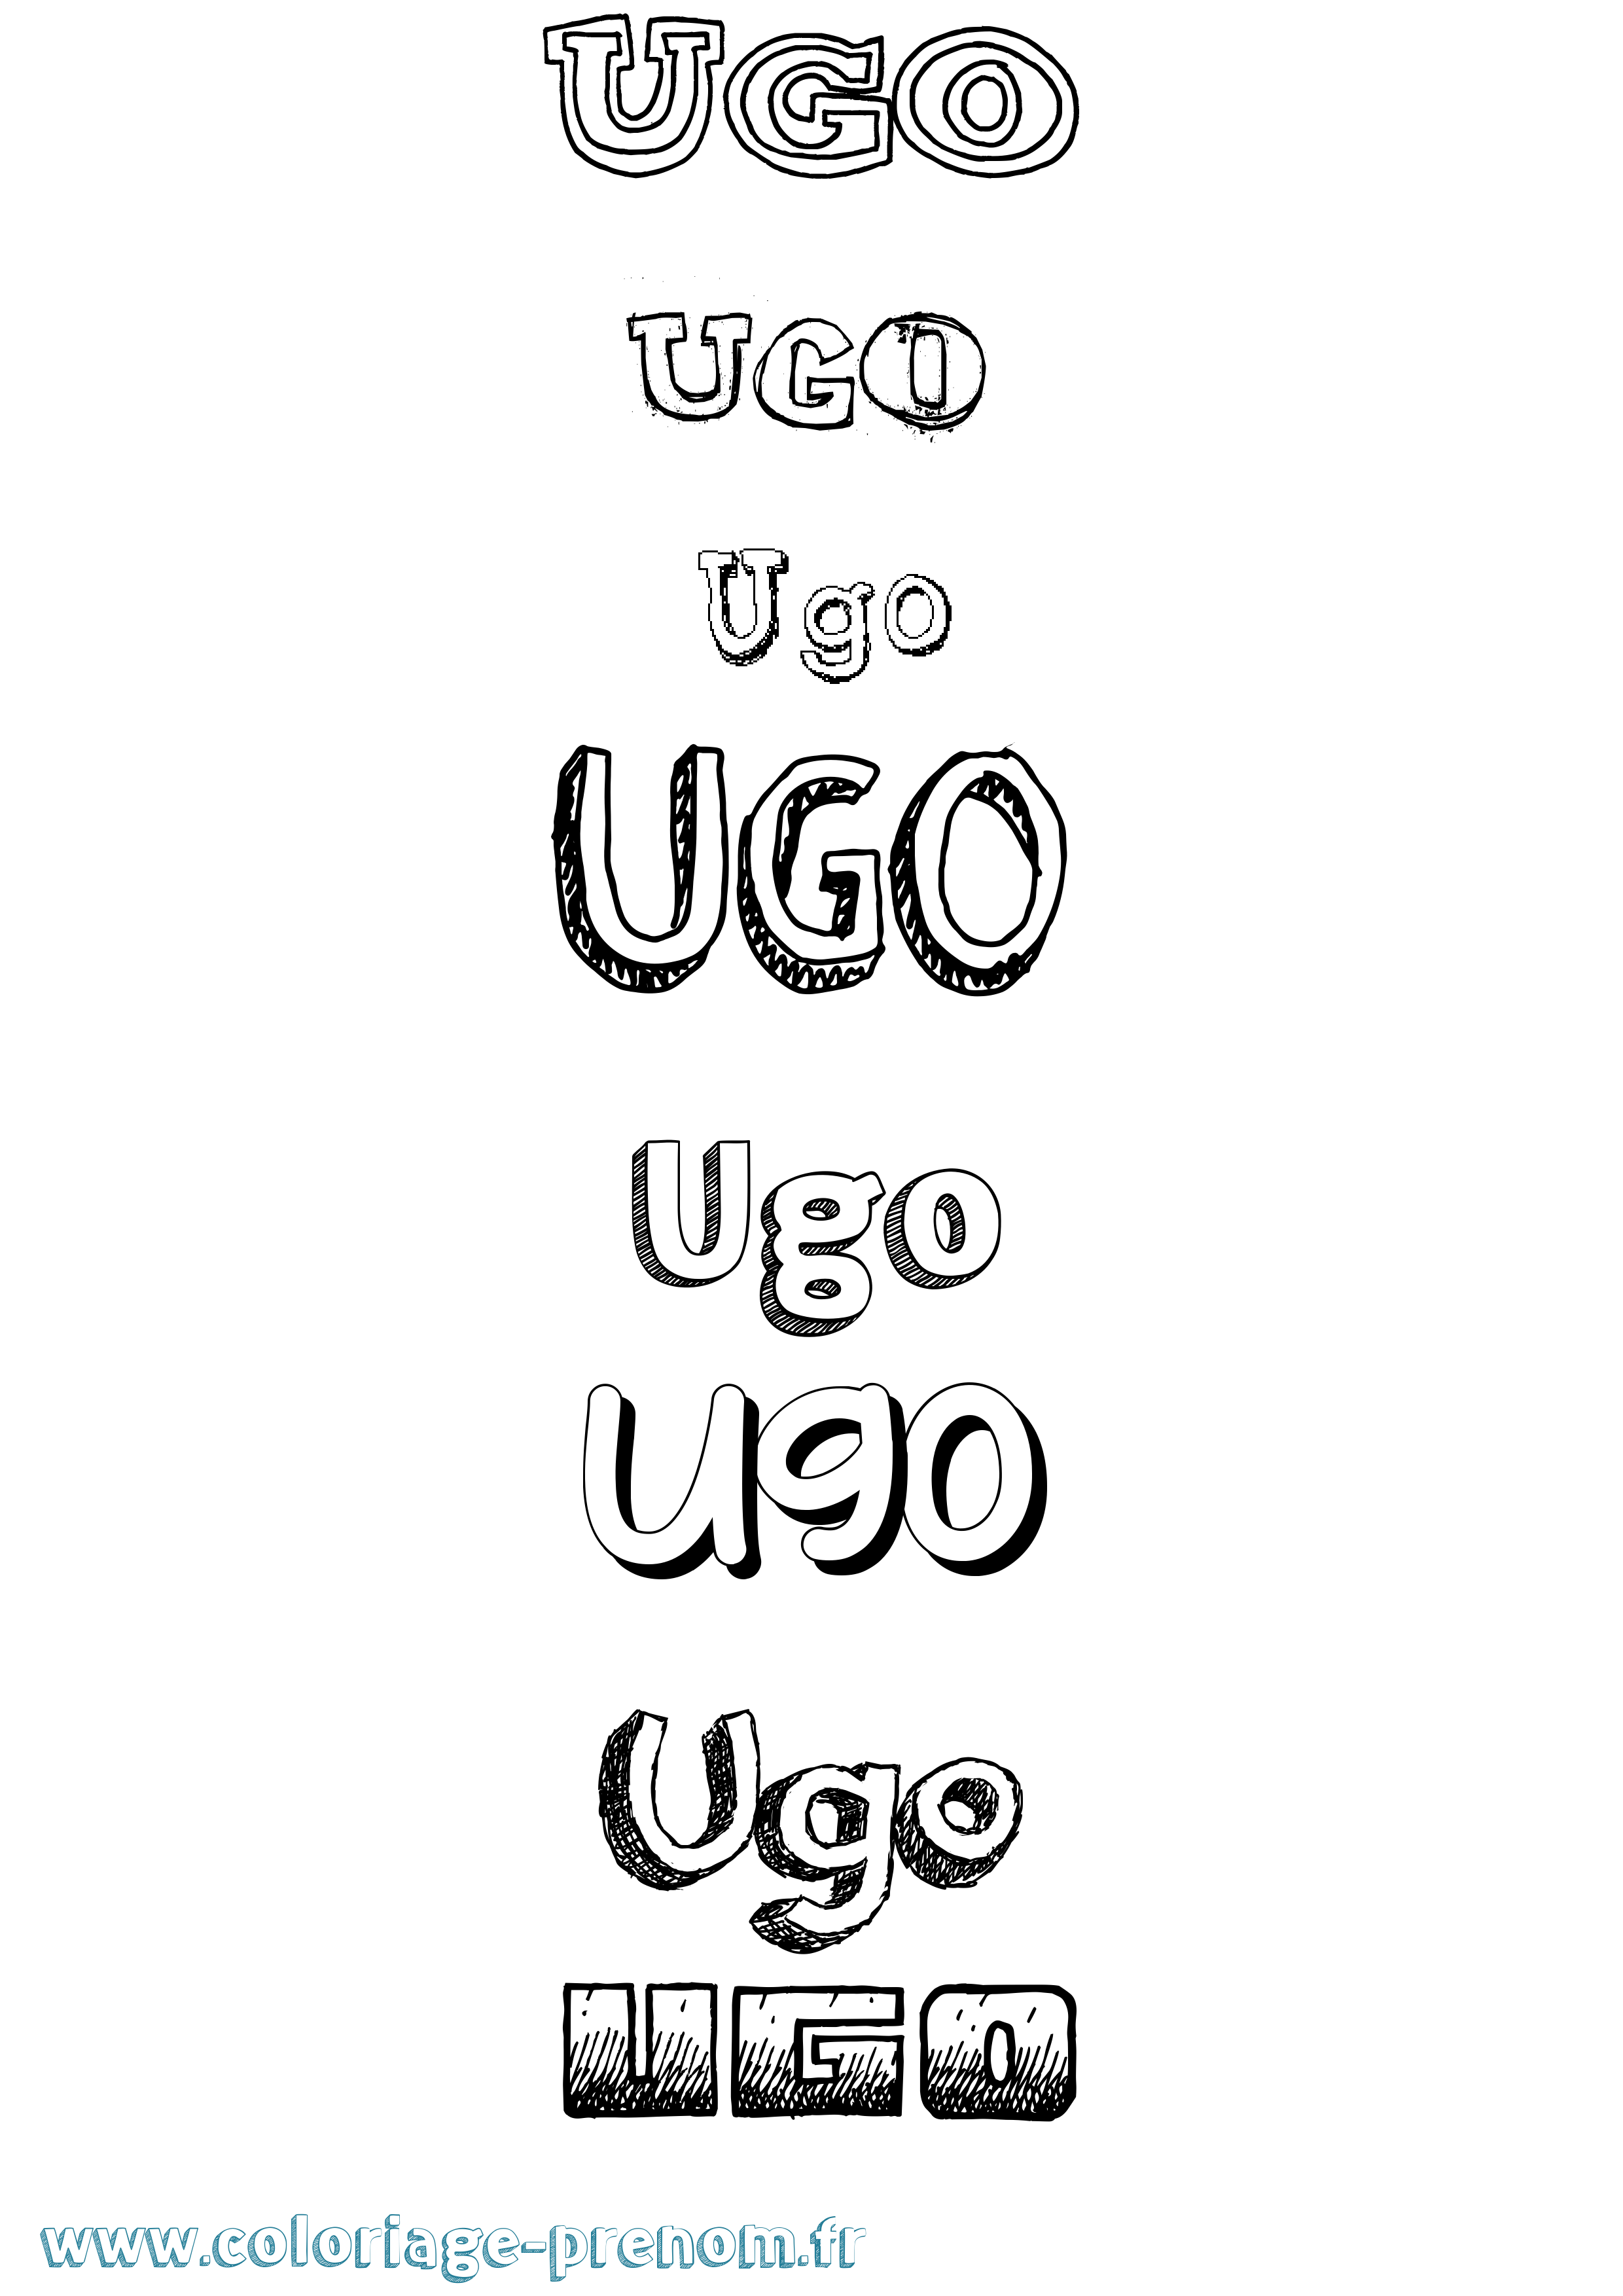 Coloriage prénom Ugo Dessiné